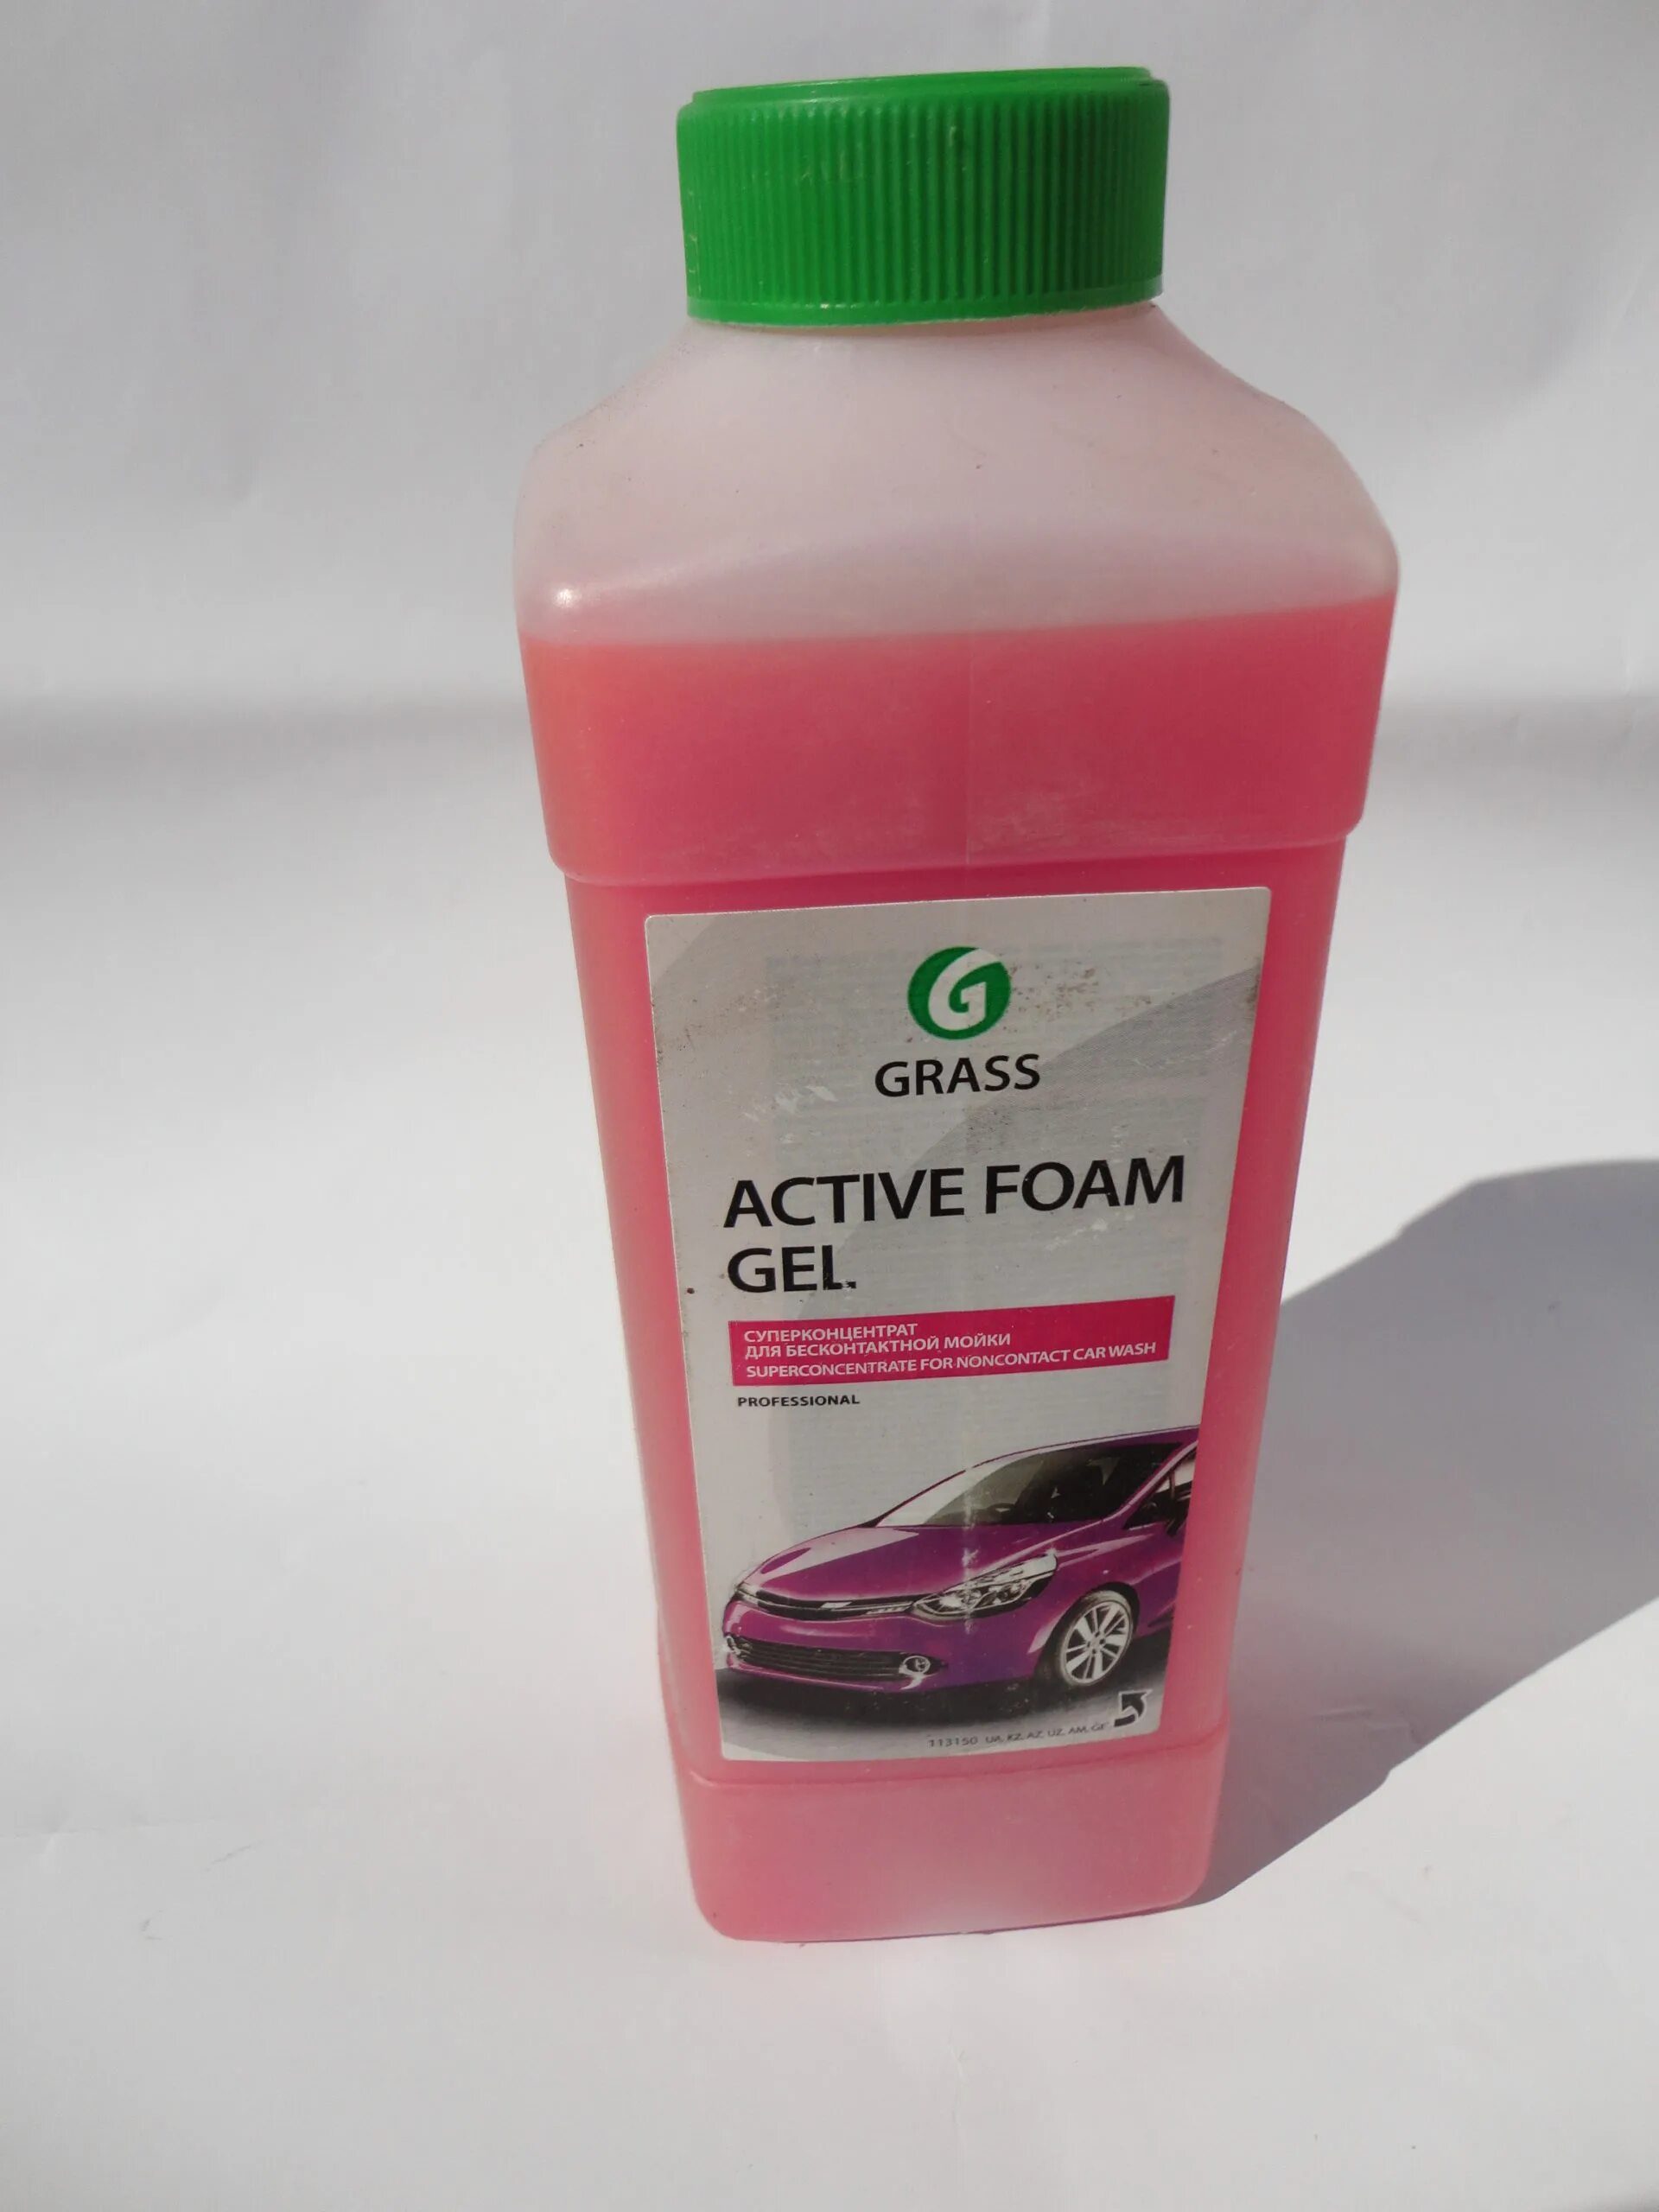 Активная пена для мойки автомобиля. Автошампунь Active Foam Red для бесконтактной мойки 1л grass 800001. Активная пена "Active Foam Gel" (канистра 1 л). Grass активная пена "Active Foam Truck" 6кг. 113180_Активная пена! 'Active Foam Gel +' (канистра 1л)\.